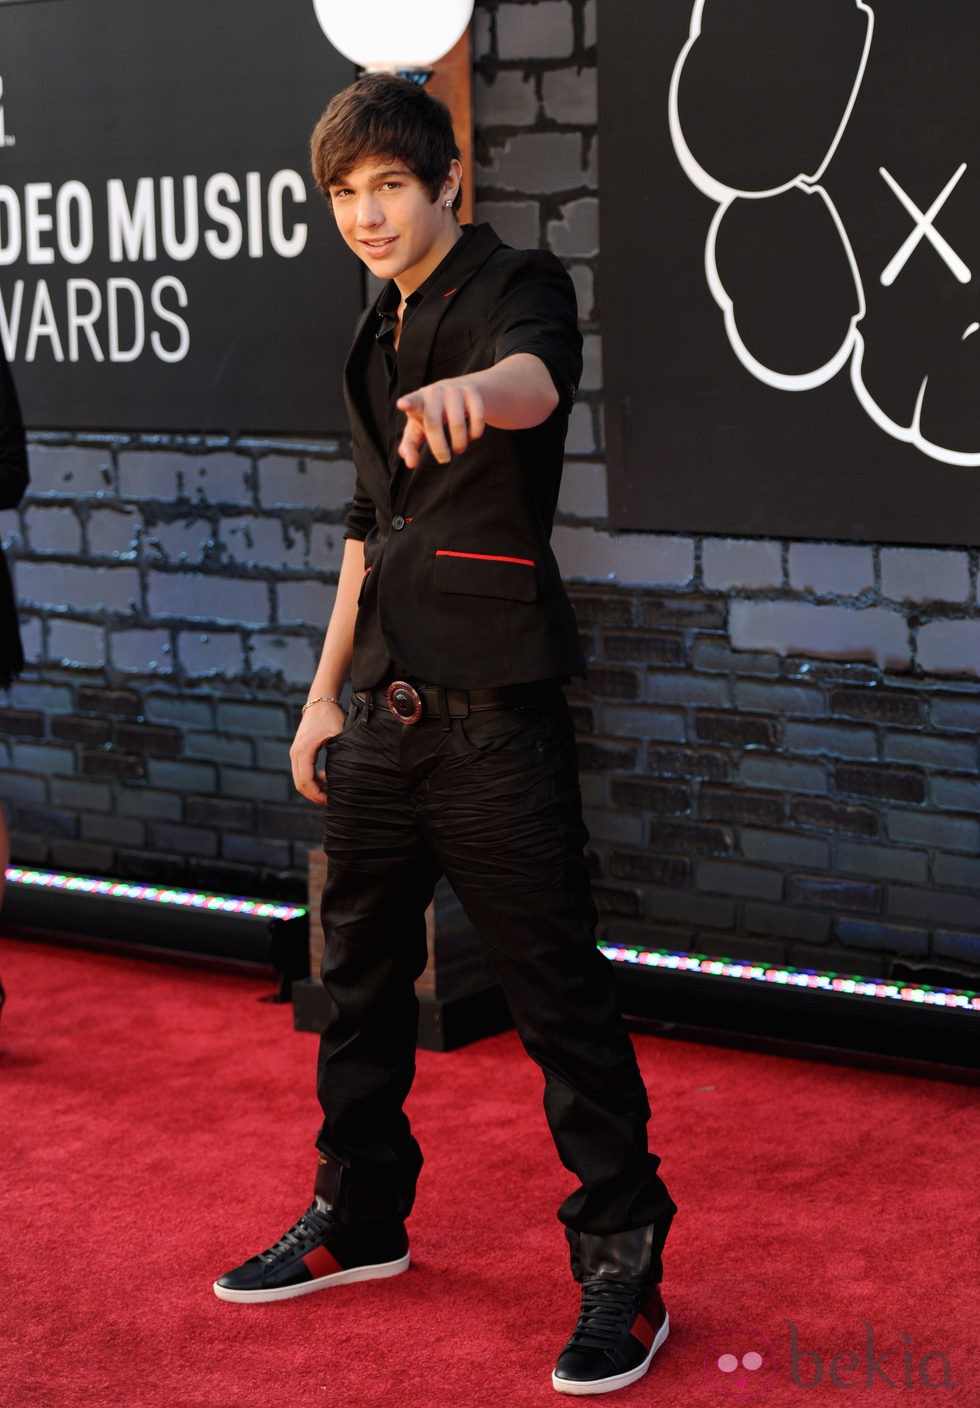 Austin Mahone en la alfombra roja de los MTV VMA 2013